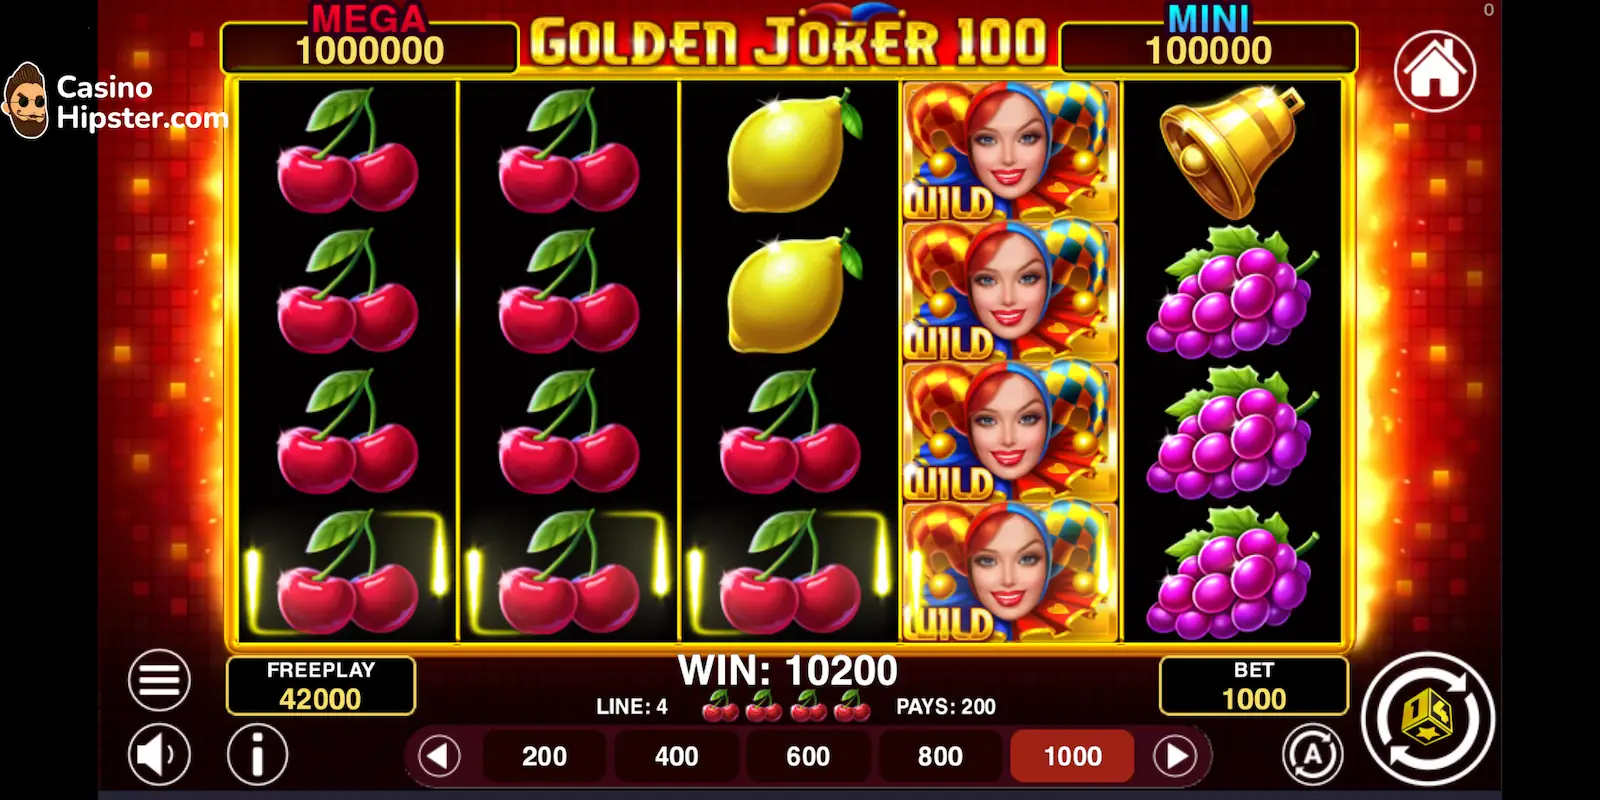 Golden Joker 100 Bonuses